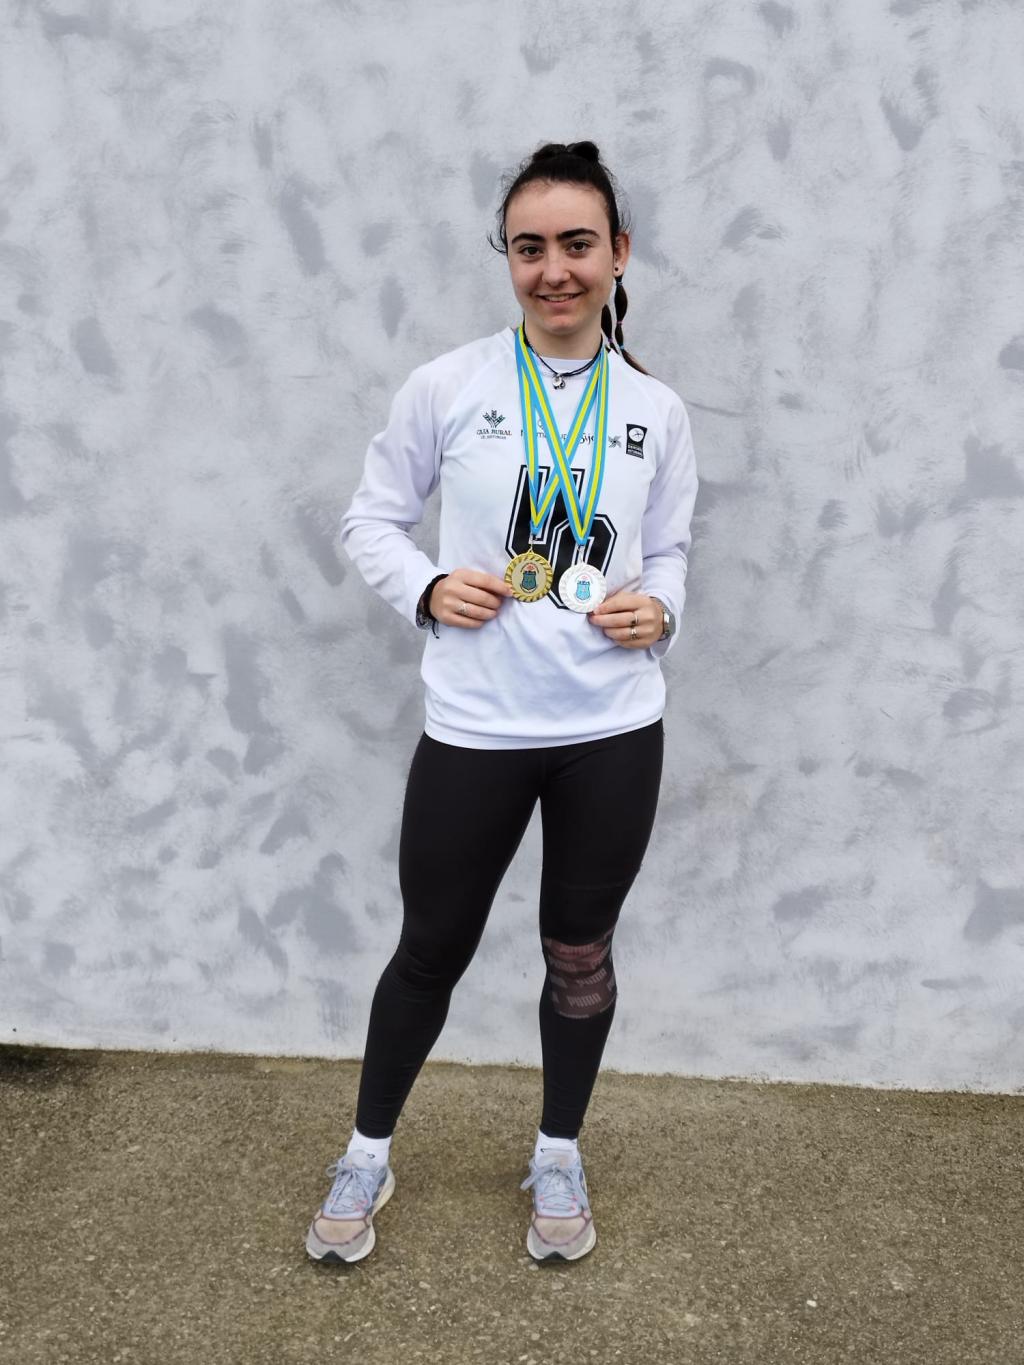 El Tapin - Celia Álvarez, campeona de Asturias de Invierno sub 20 y subcampeona absoluta en lanzamiento de jabalina